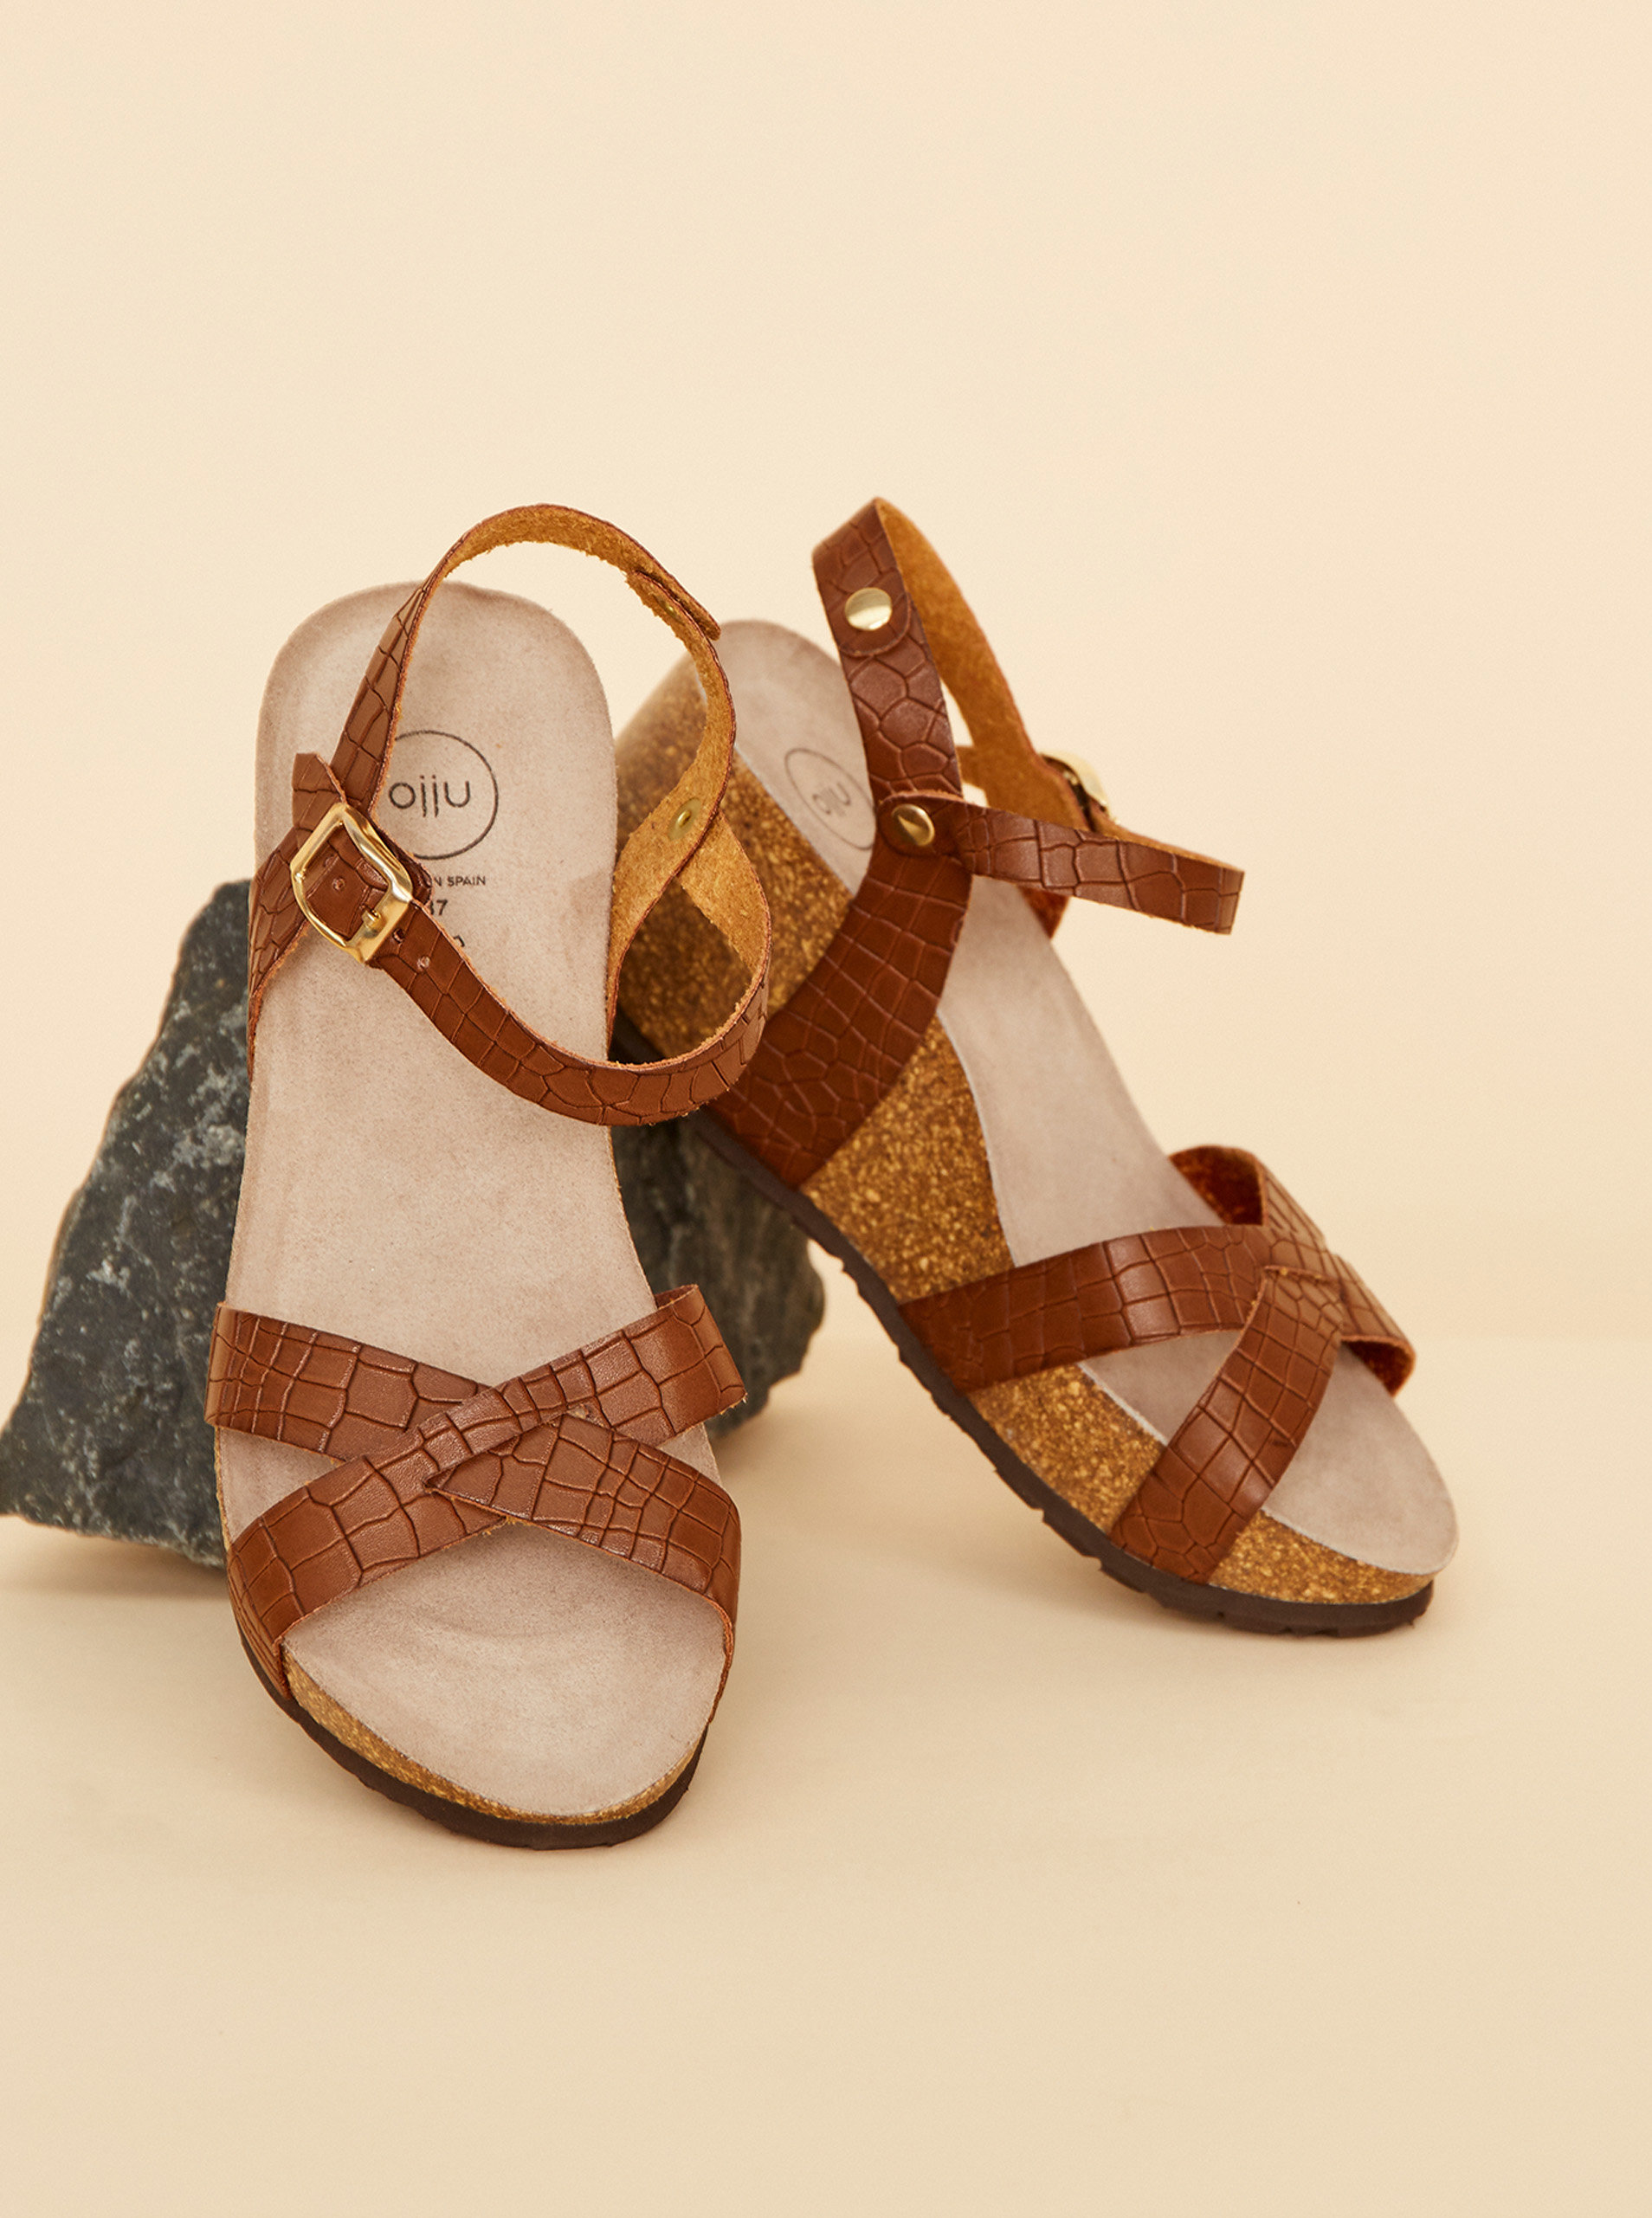 Fotografie Hnědé dámské kožené vzorované sandálky na klínku OJJU